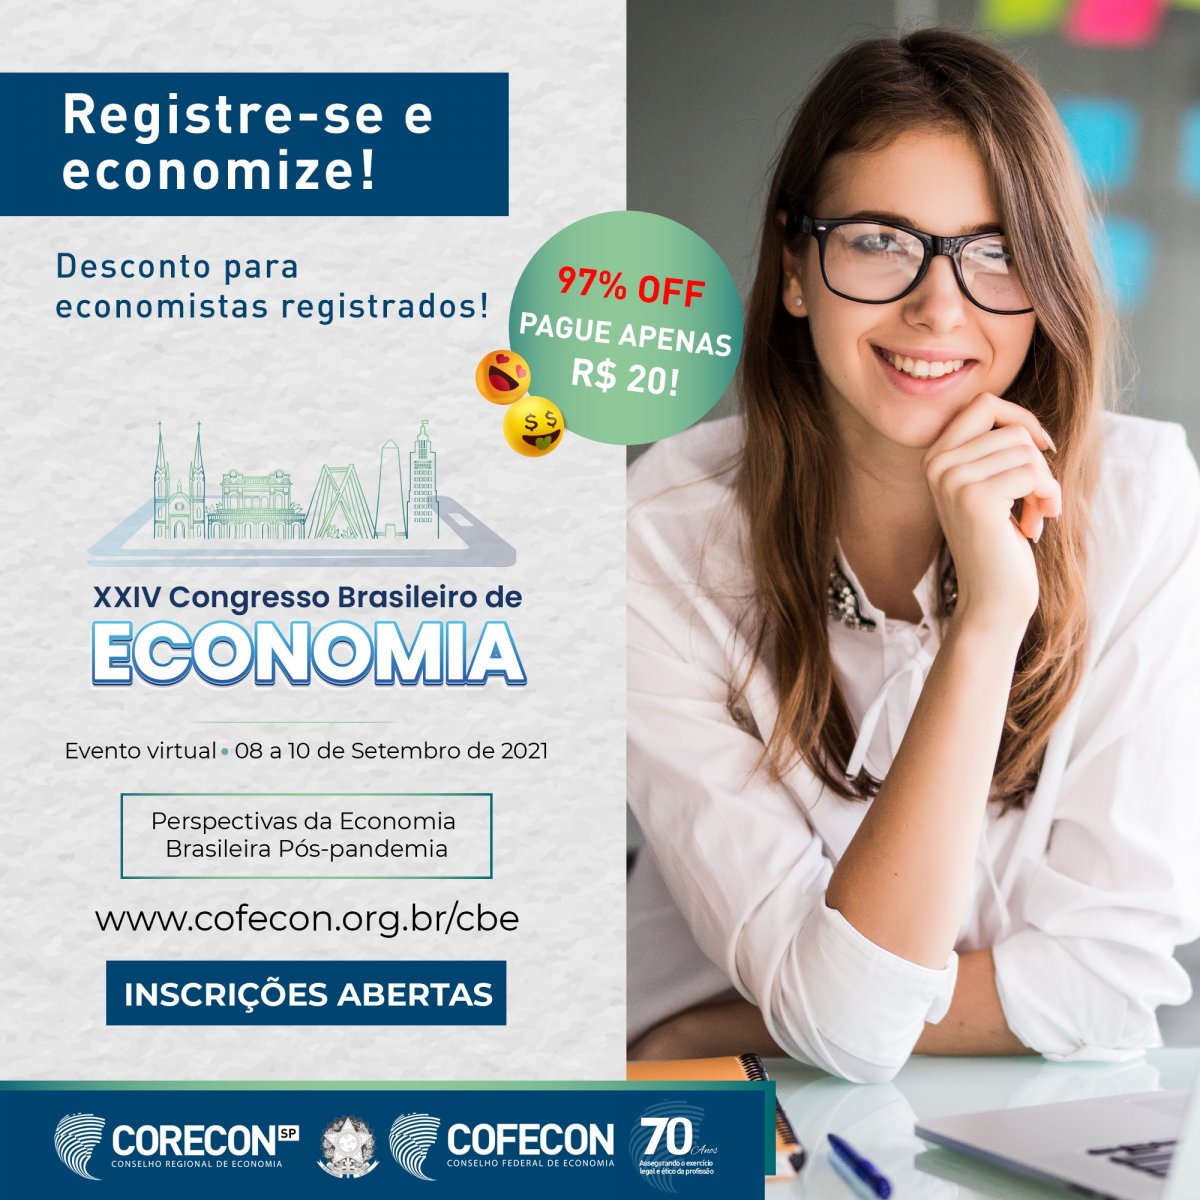 Economista registrado e acadêmicos de Economia têm ingresso a R$ 20 para o CBE - Corecon/SC